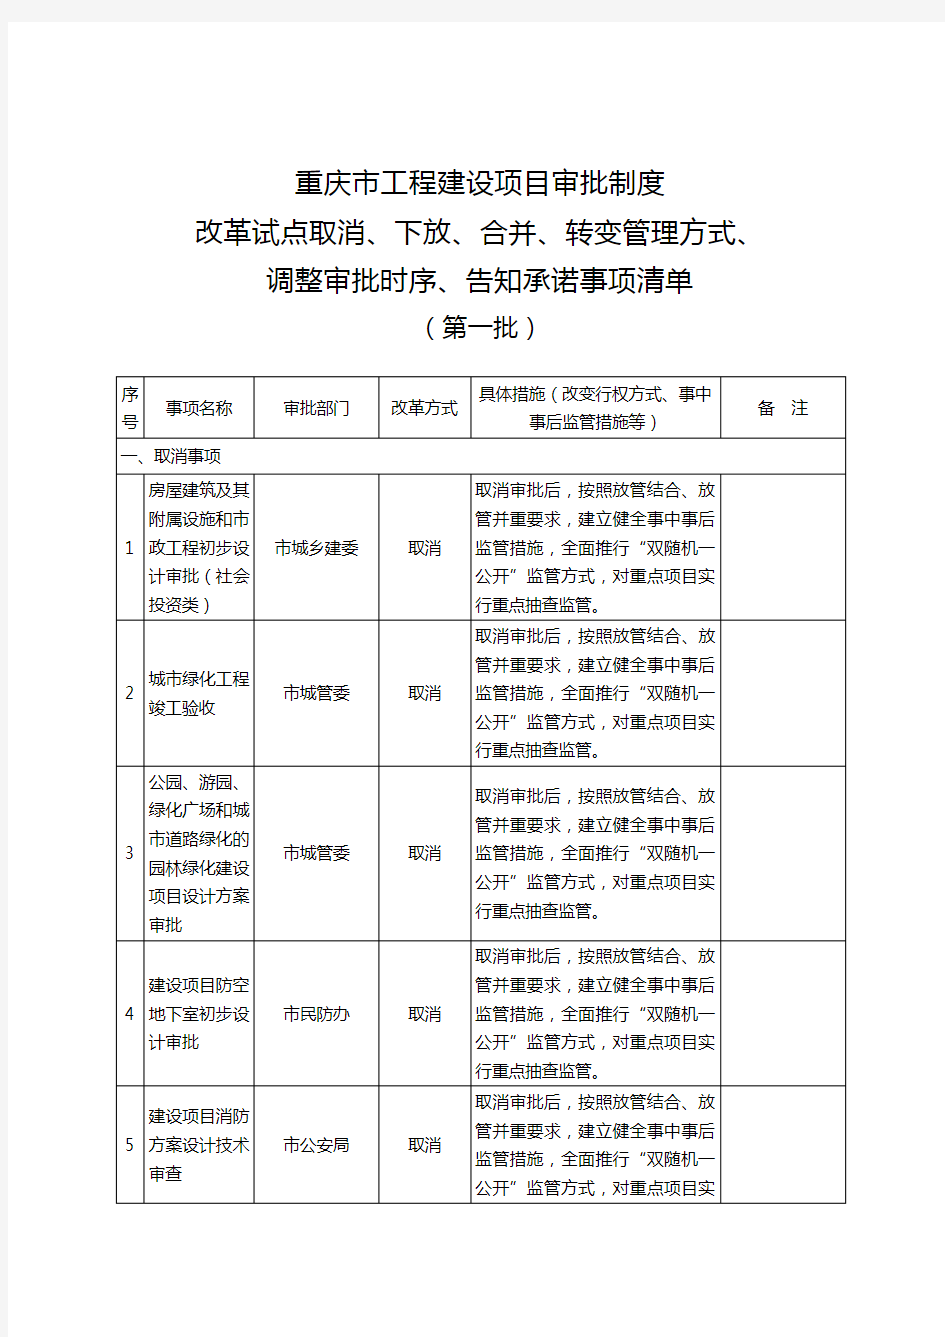 重庆市工程建设项目审批制度改革试点取消、下放、合并、转变管理方式、调整审批时序、告知承诺事项清单